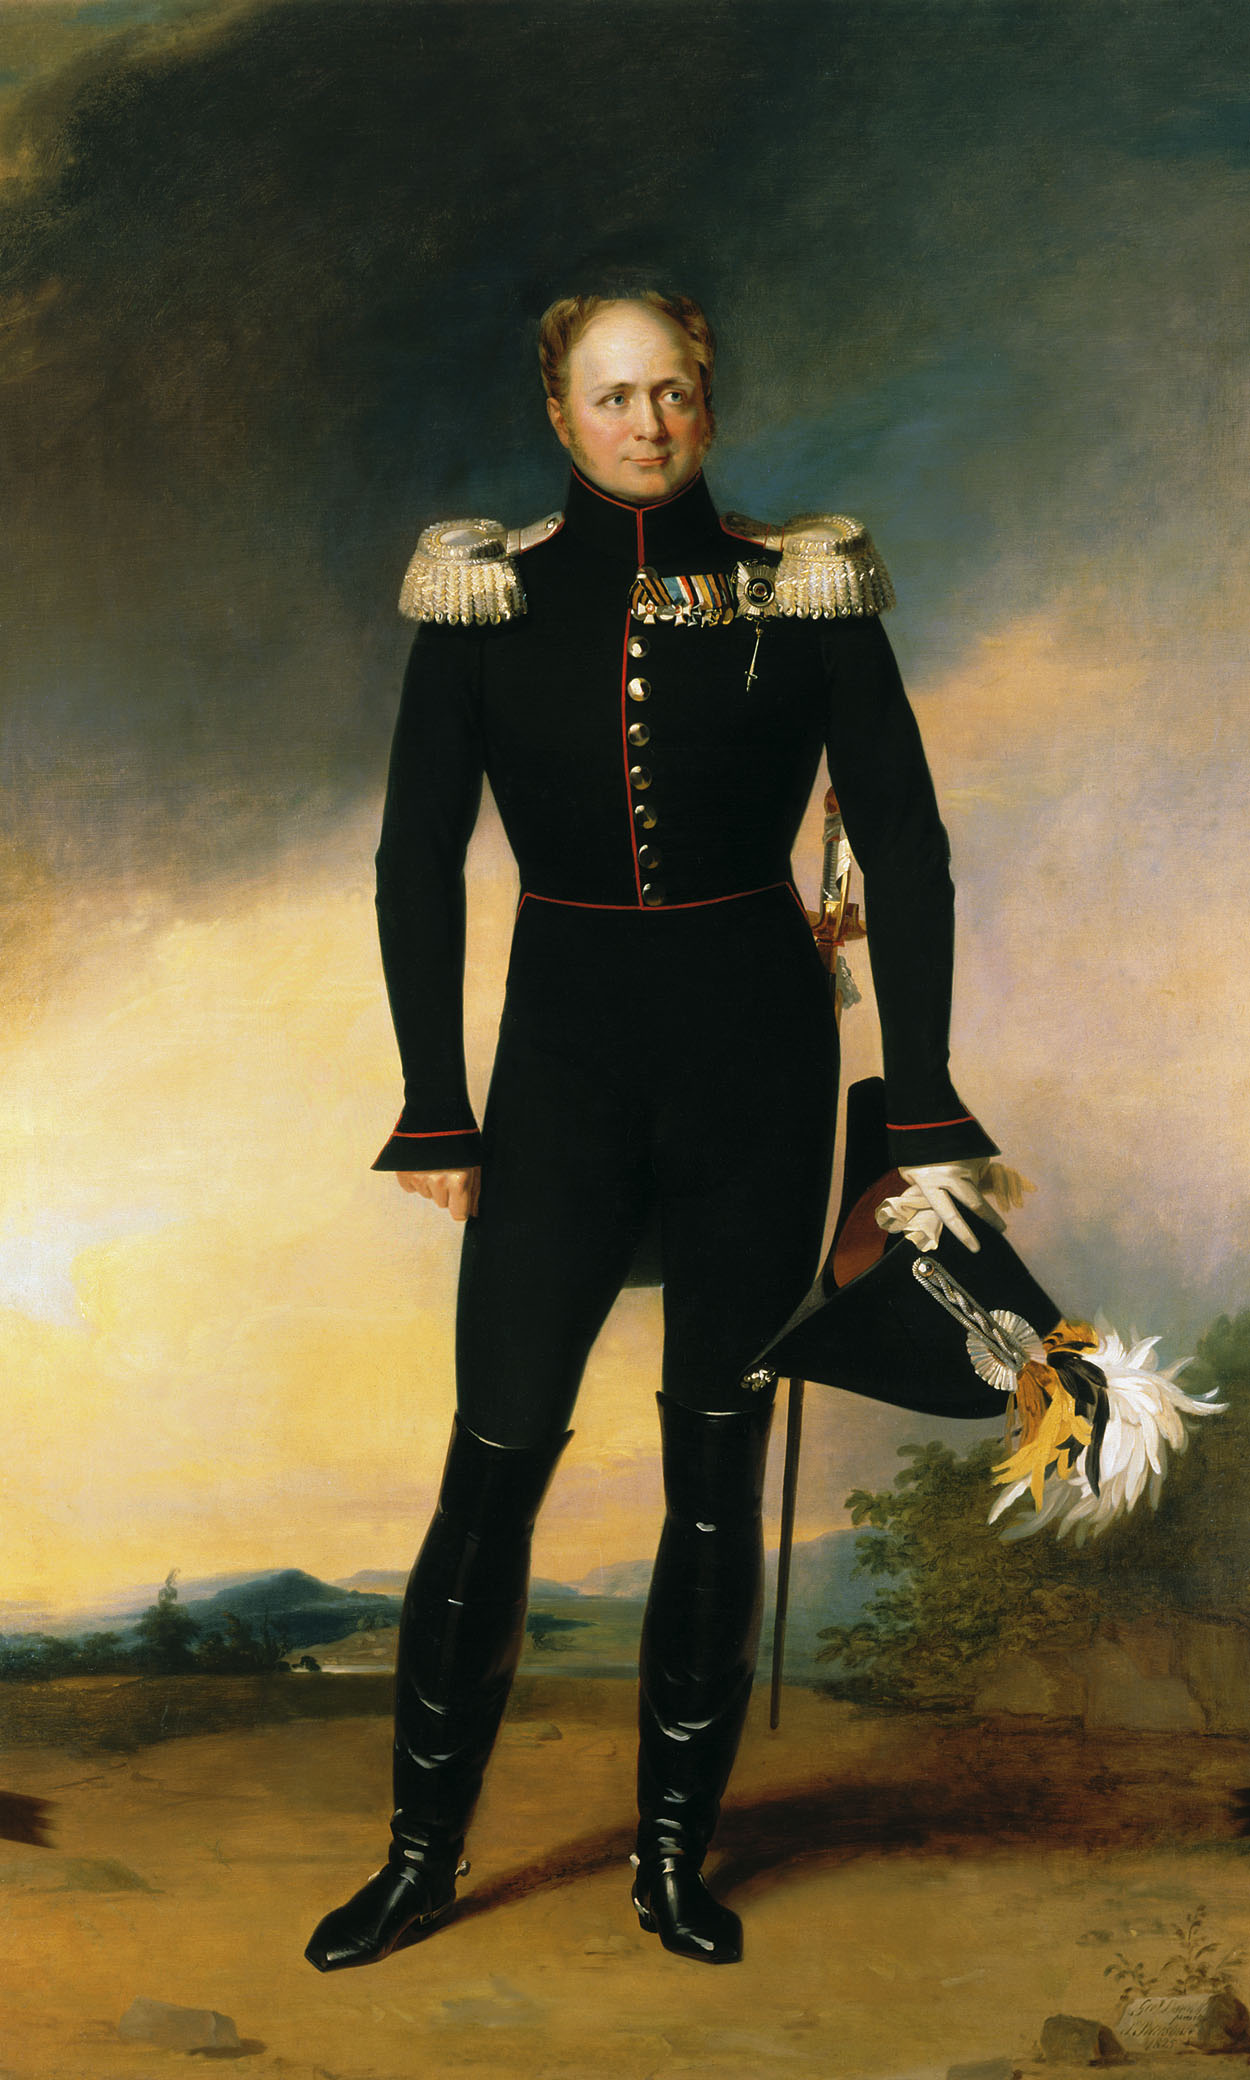 Александр I, Всероссийский император и самодержец